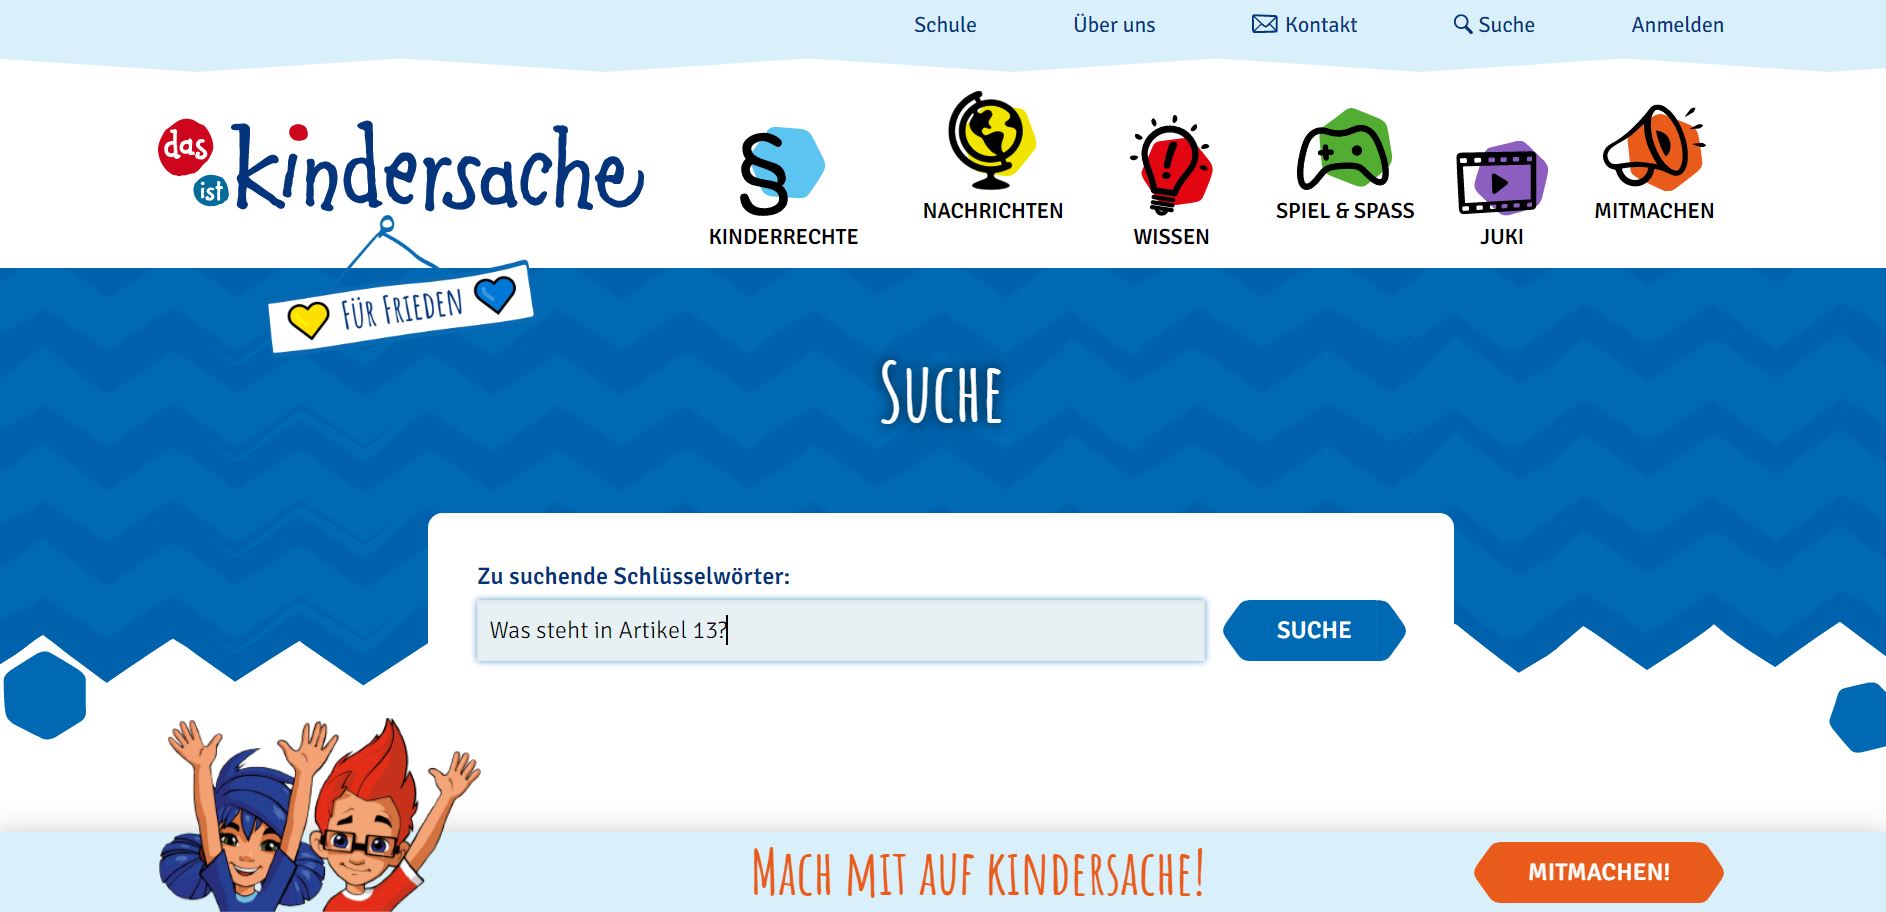 zu sehen ist die Suchanzeige der kinder-Internetseite kindersache.de, in die Suchmaschine eingegeben die Frage "Was steht in Artikel 13?"